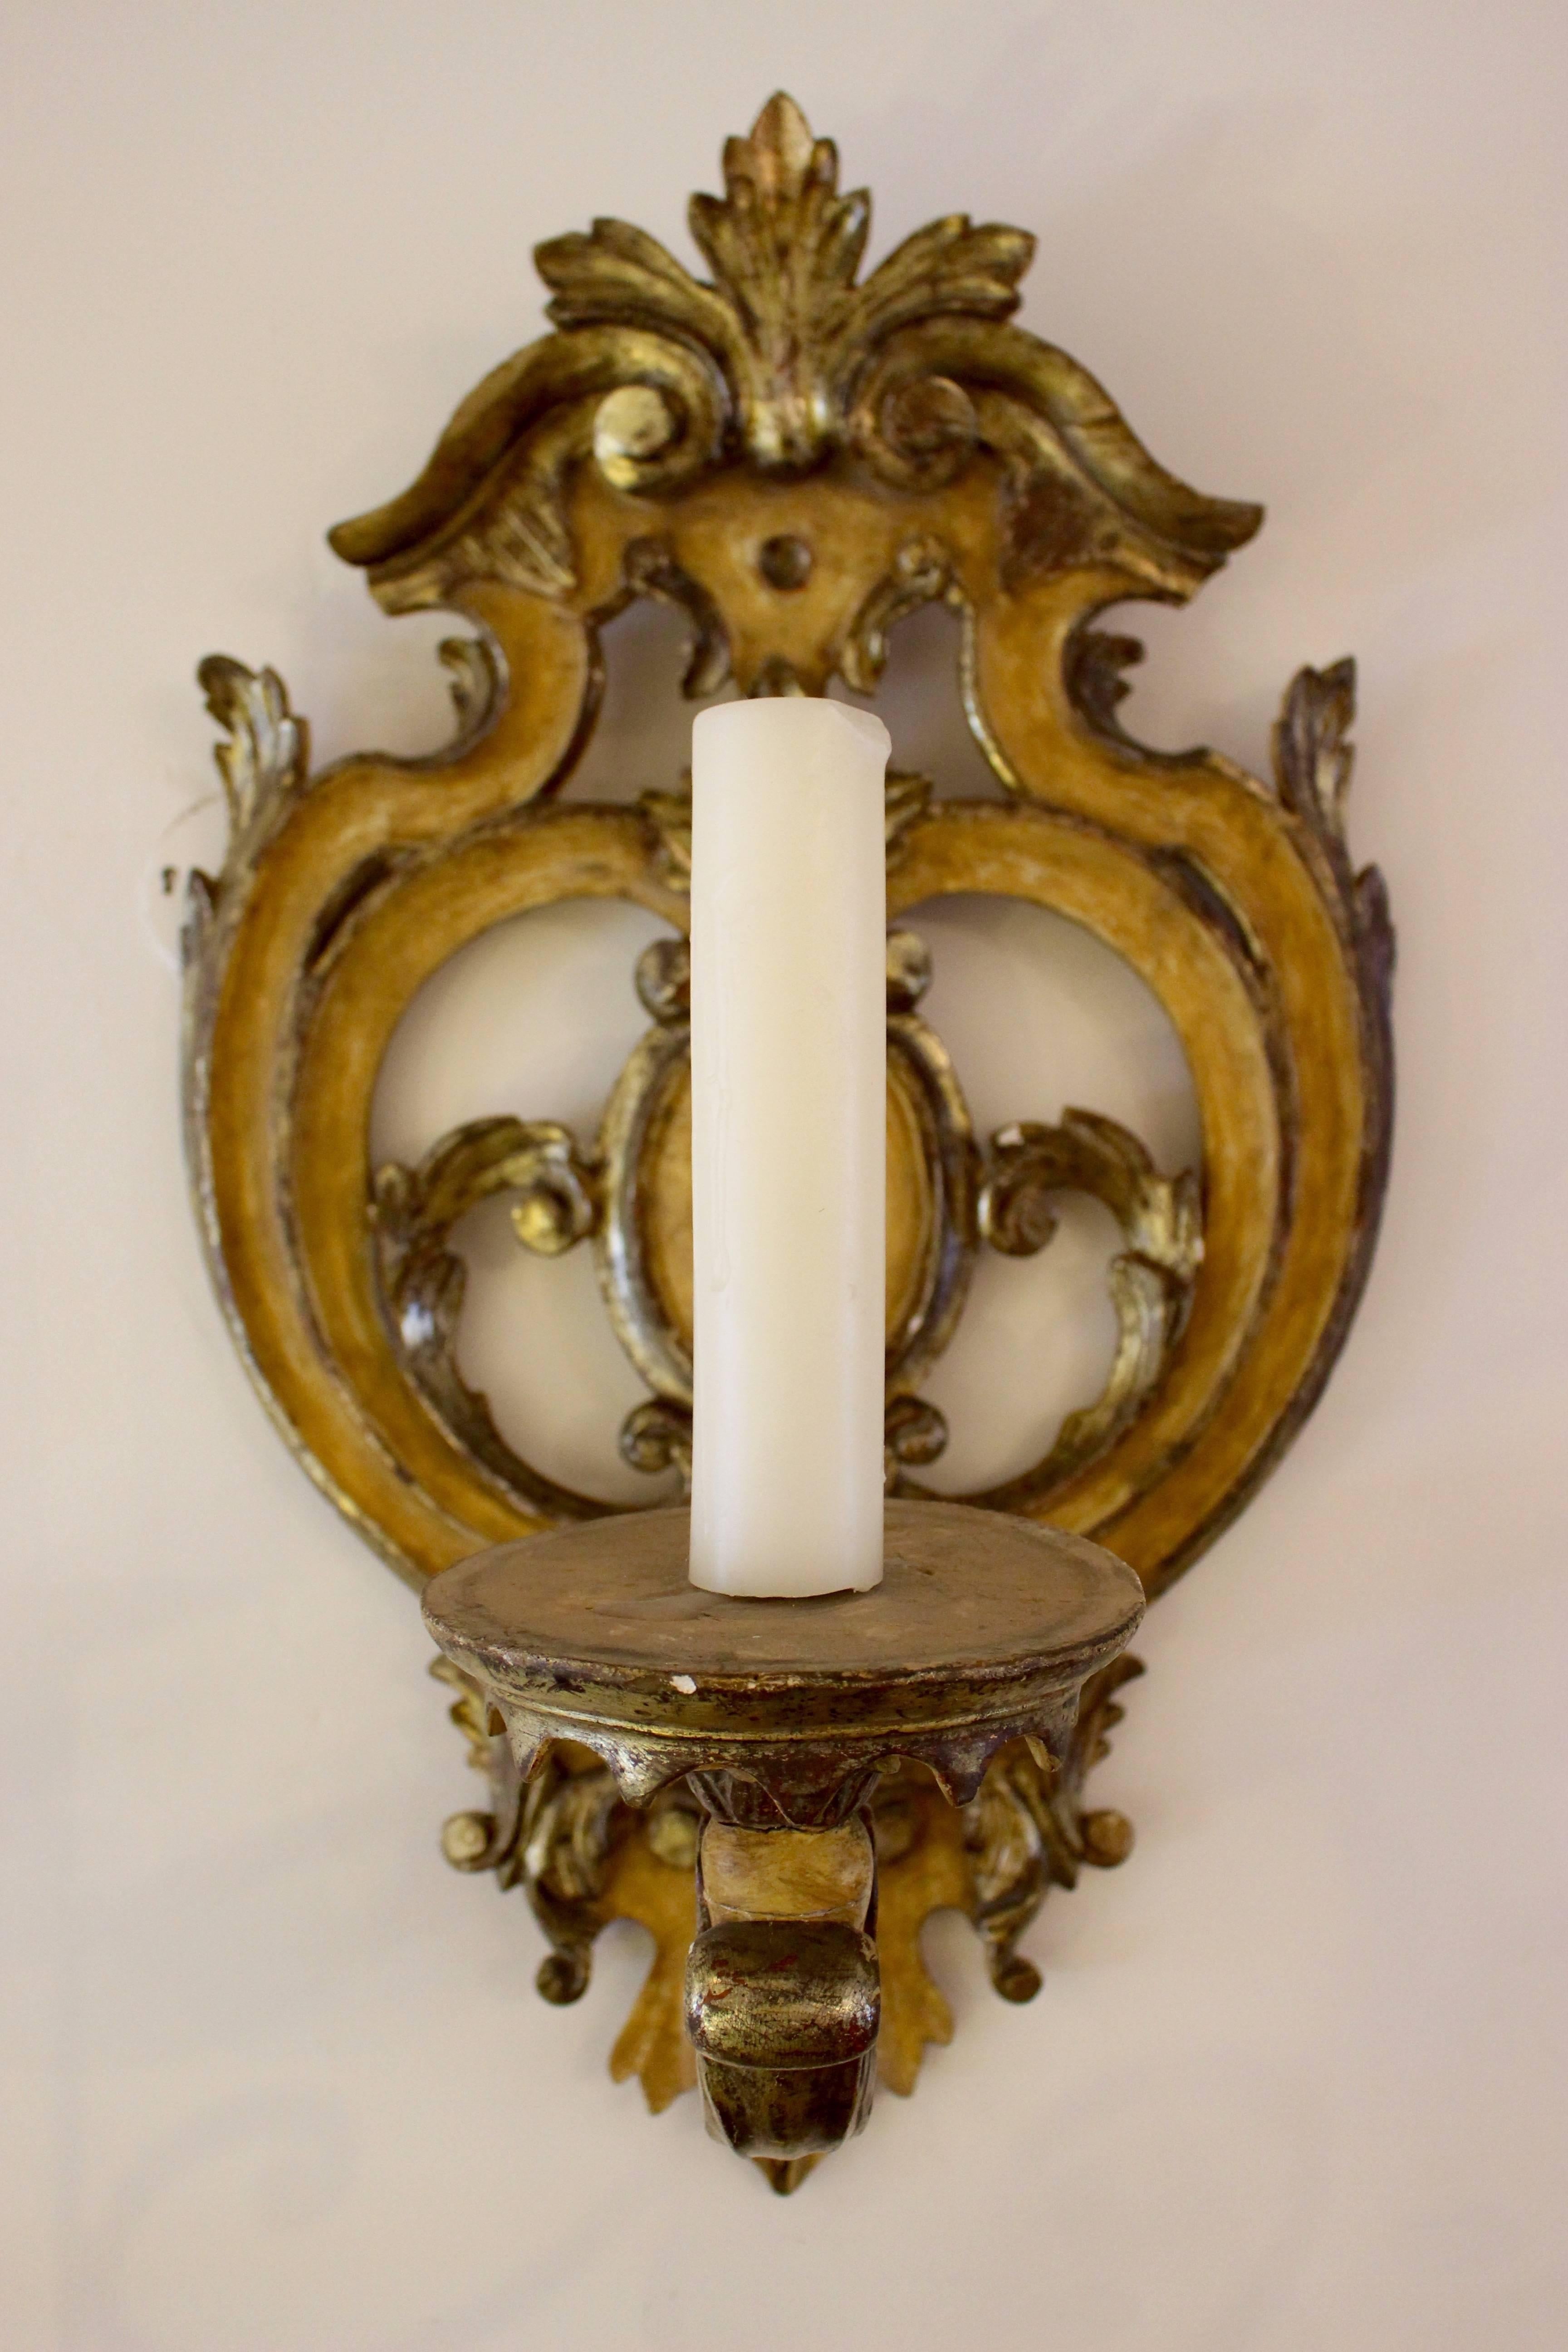 Applique murale baroque italienne en bois sculpté, parcellaire, doré et peint à l'ocre, datant de la première moitié du XVIIIe siècle. La plaque arrière, magnifiquement façonnée et percée, présente un médaillon central encadré de rinceaux